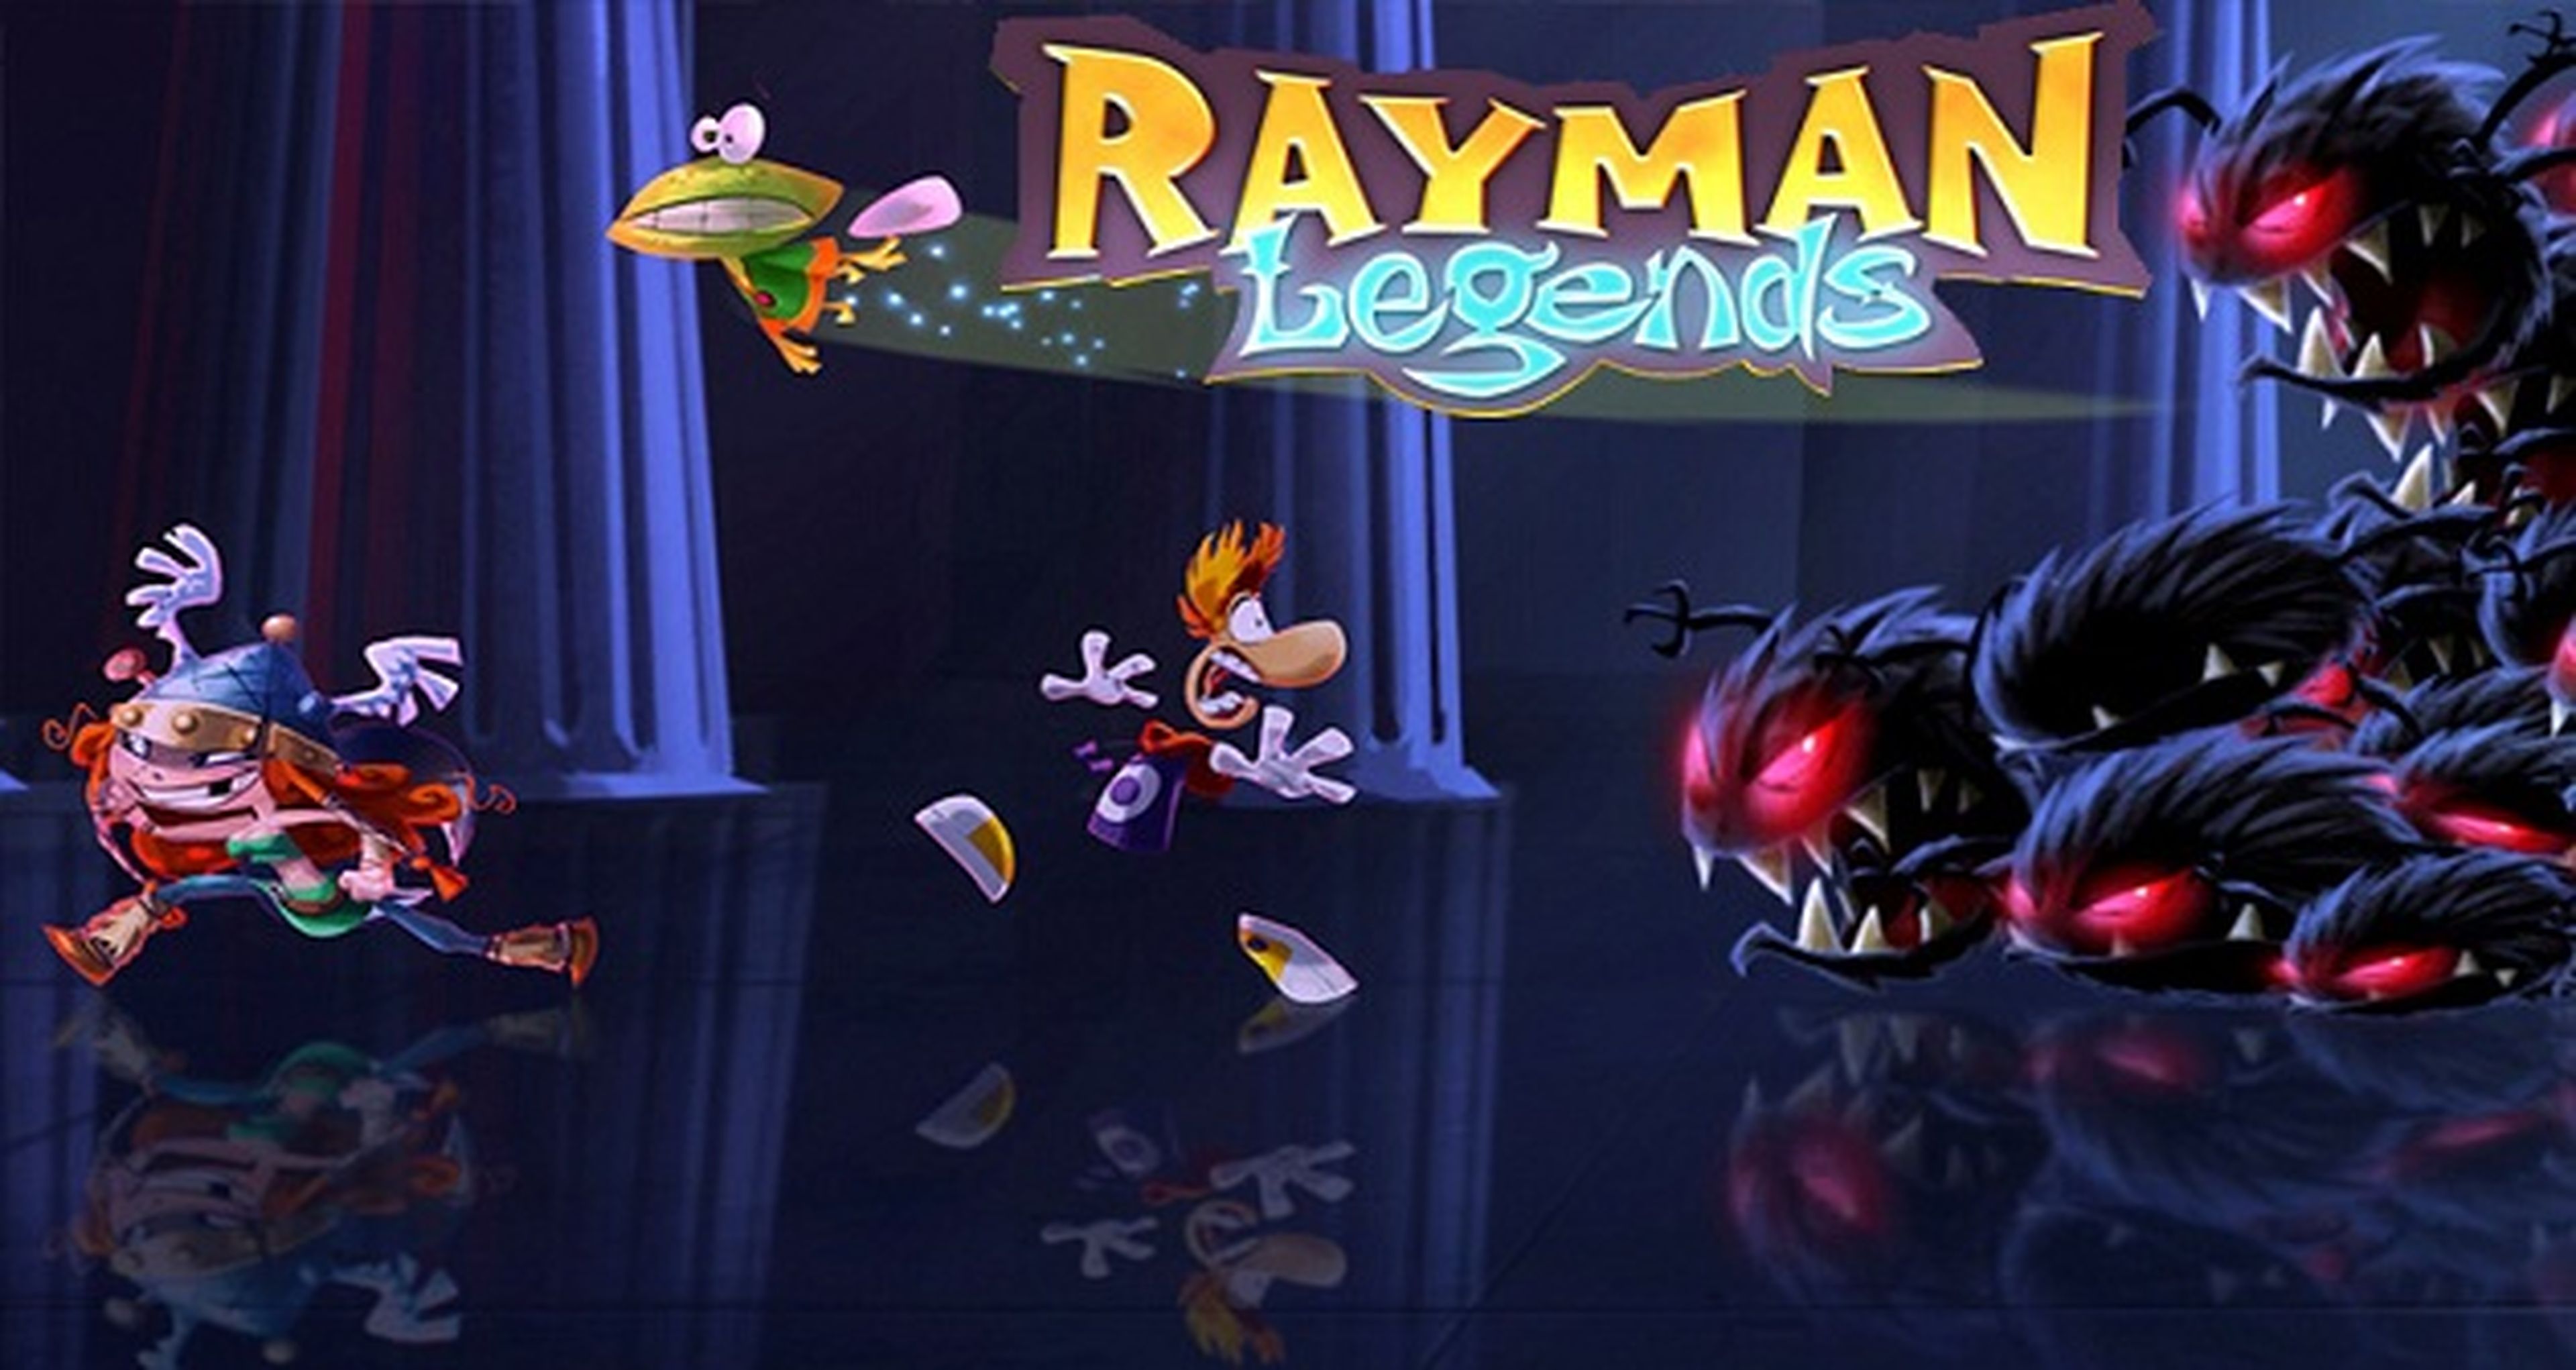 Rayman Legends do Wii U é confirmado também para Xbox 360 e PS3